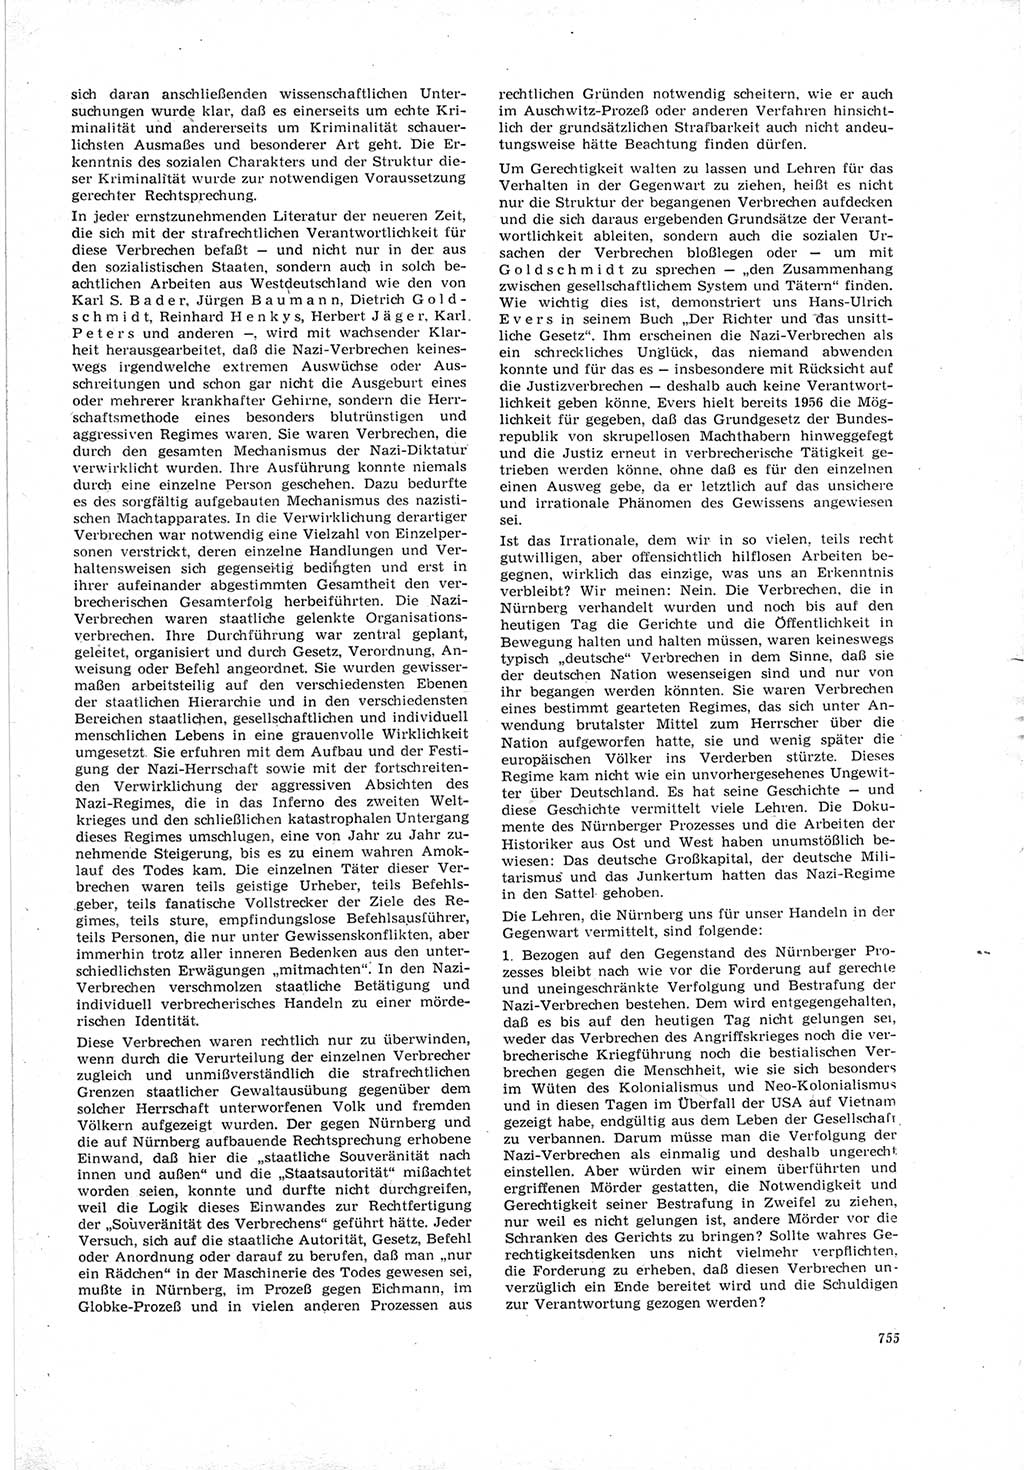 Neue Justiz (NJ), Zeitschrift für Recht und Rechtswissenschaft [Deutsche Demokratische Republik (DDR)], 19. Jahrgang 1965, Seite 755 (NJ DDR 1965, S. 755)